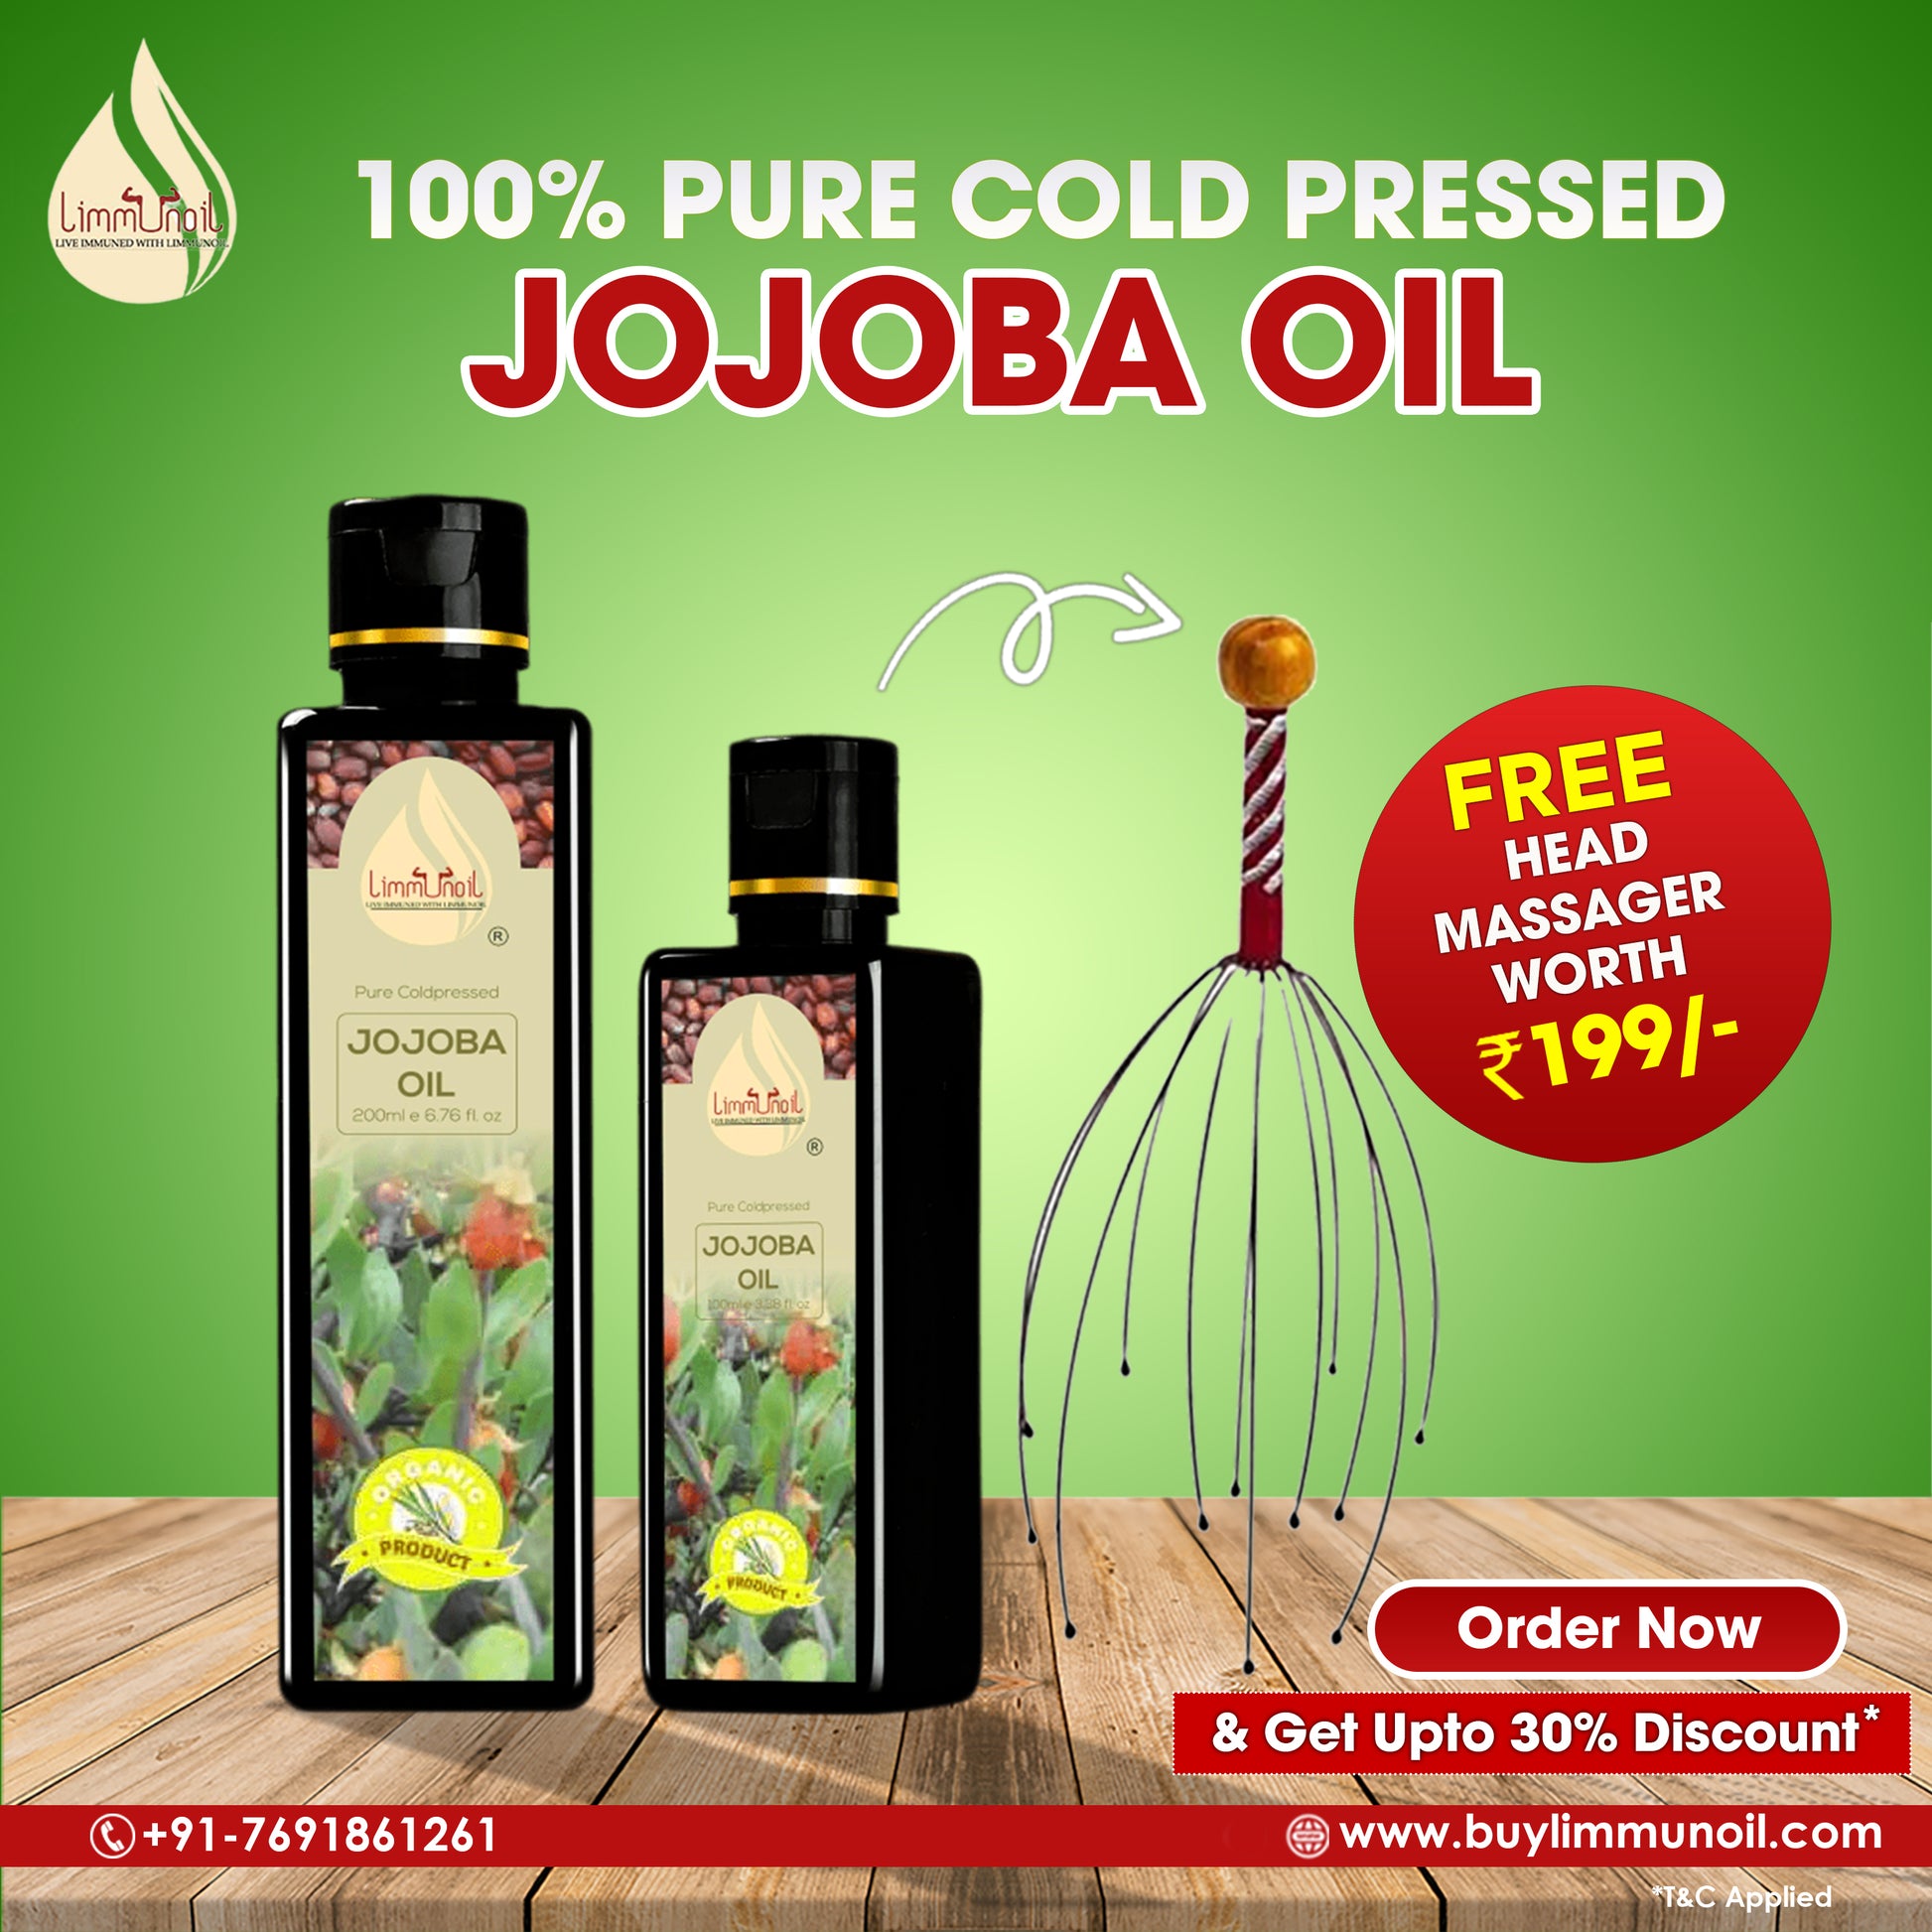 Best Cold-Pressed Jojoba Oil for Skin